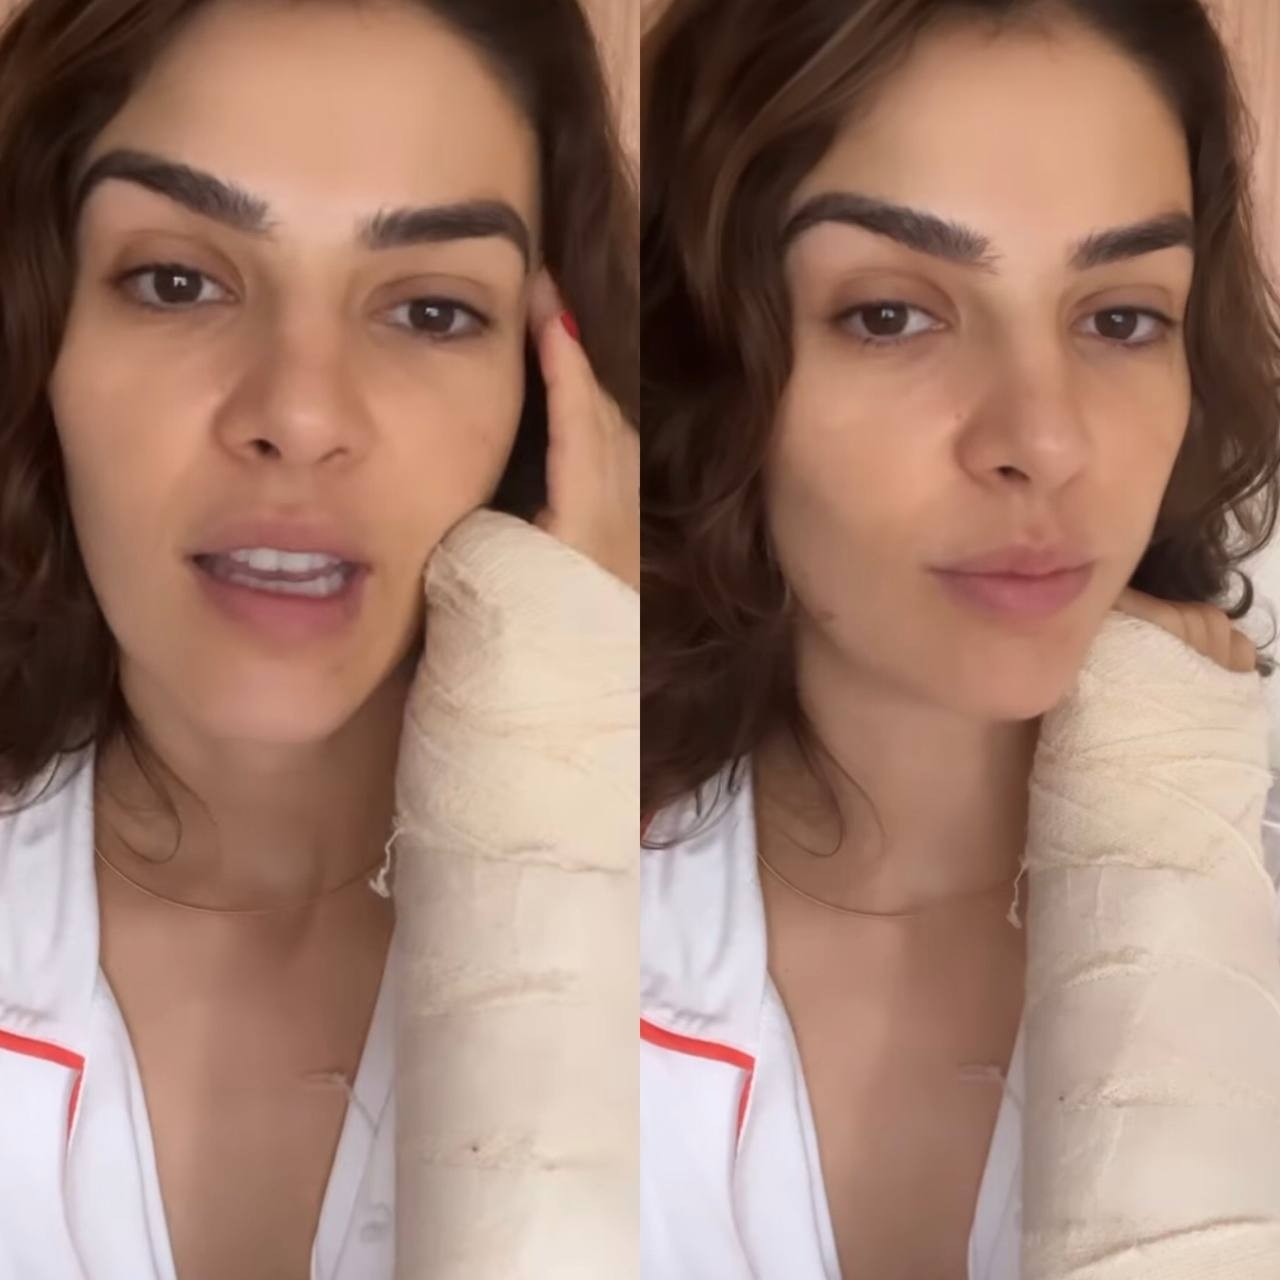 'Exercício de paciência e aceitação', diz Mônica Benini sobre braço imobilizado (Foto: Reprodução / Instagram)